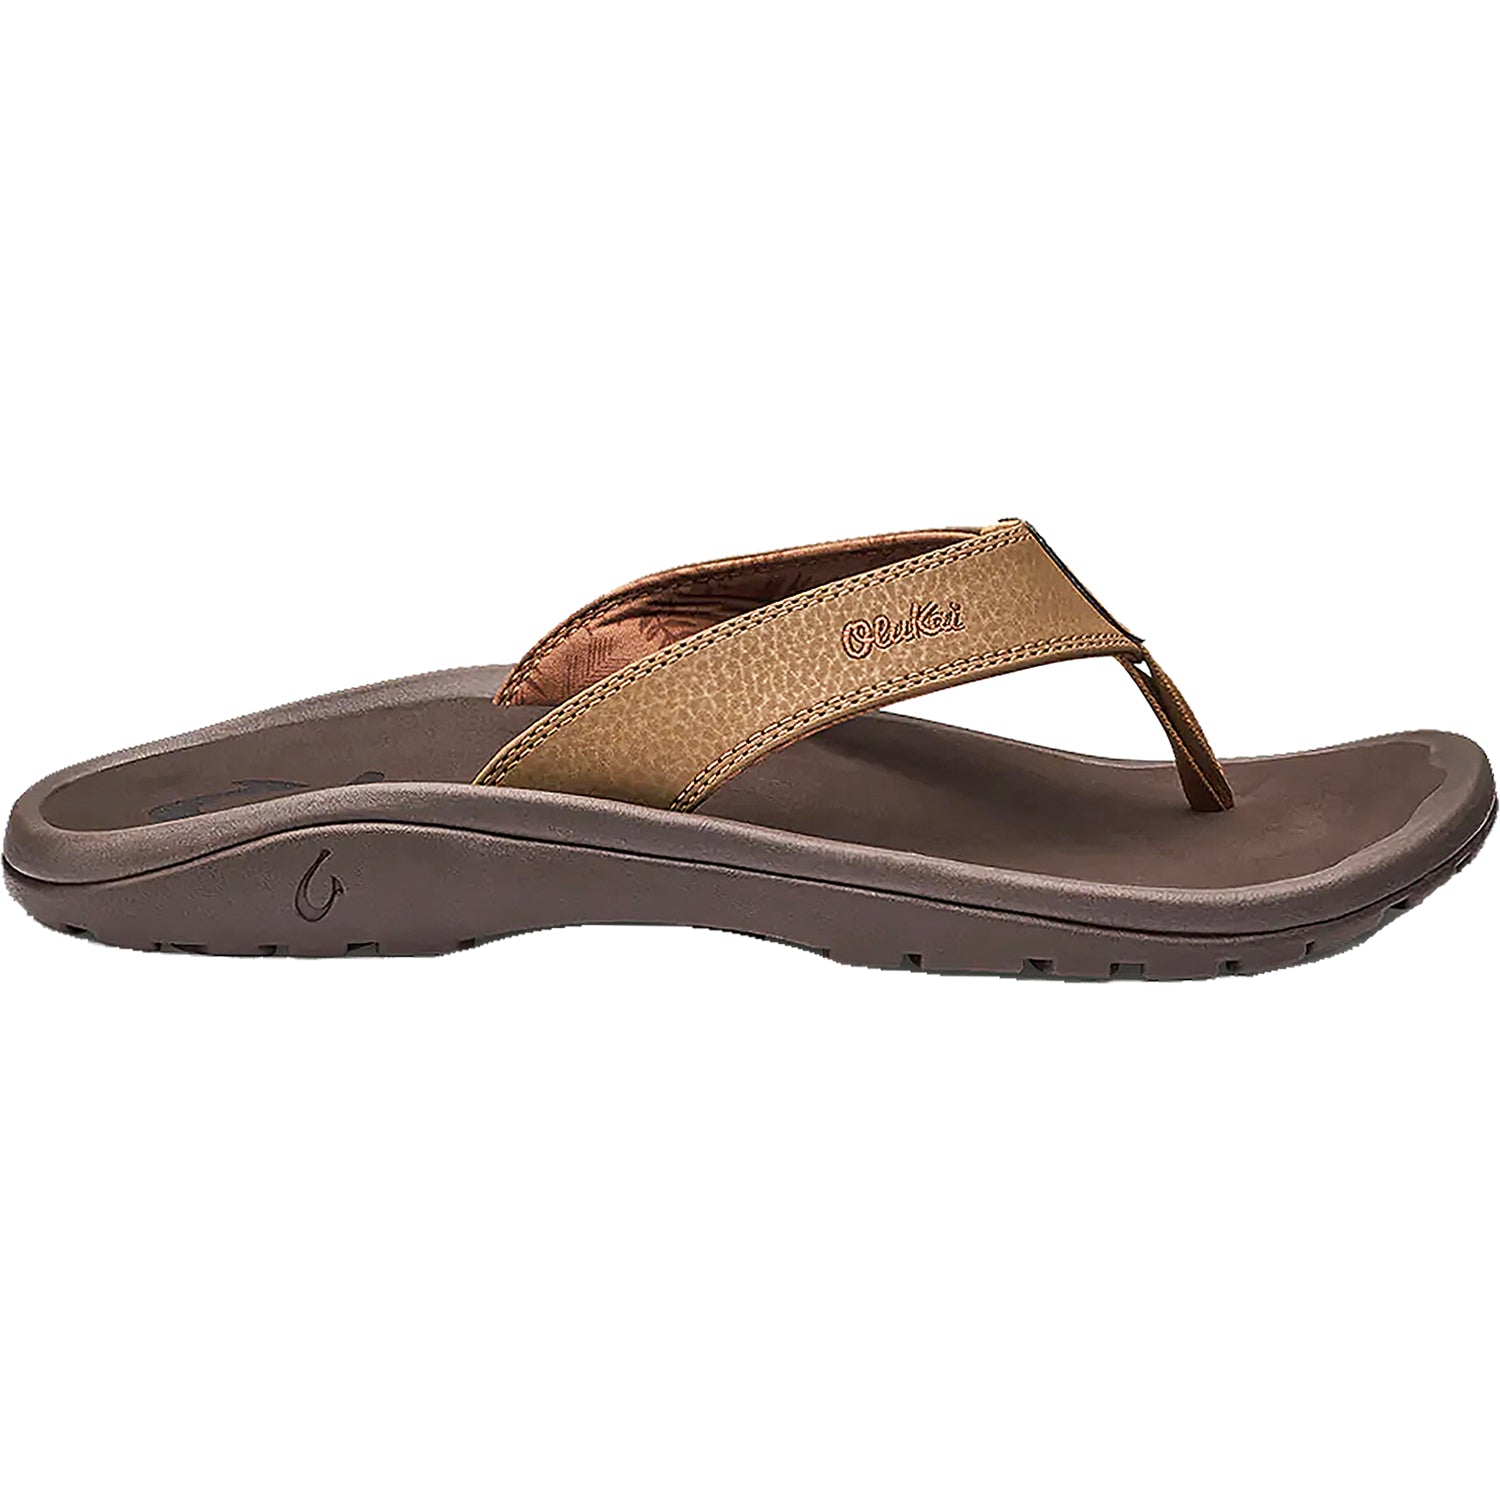 OluKai Ohana Tan | Men's Beach Sandals | Footwear etc.